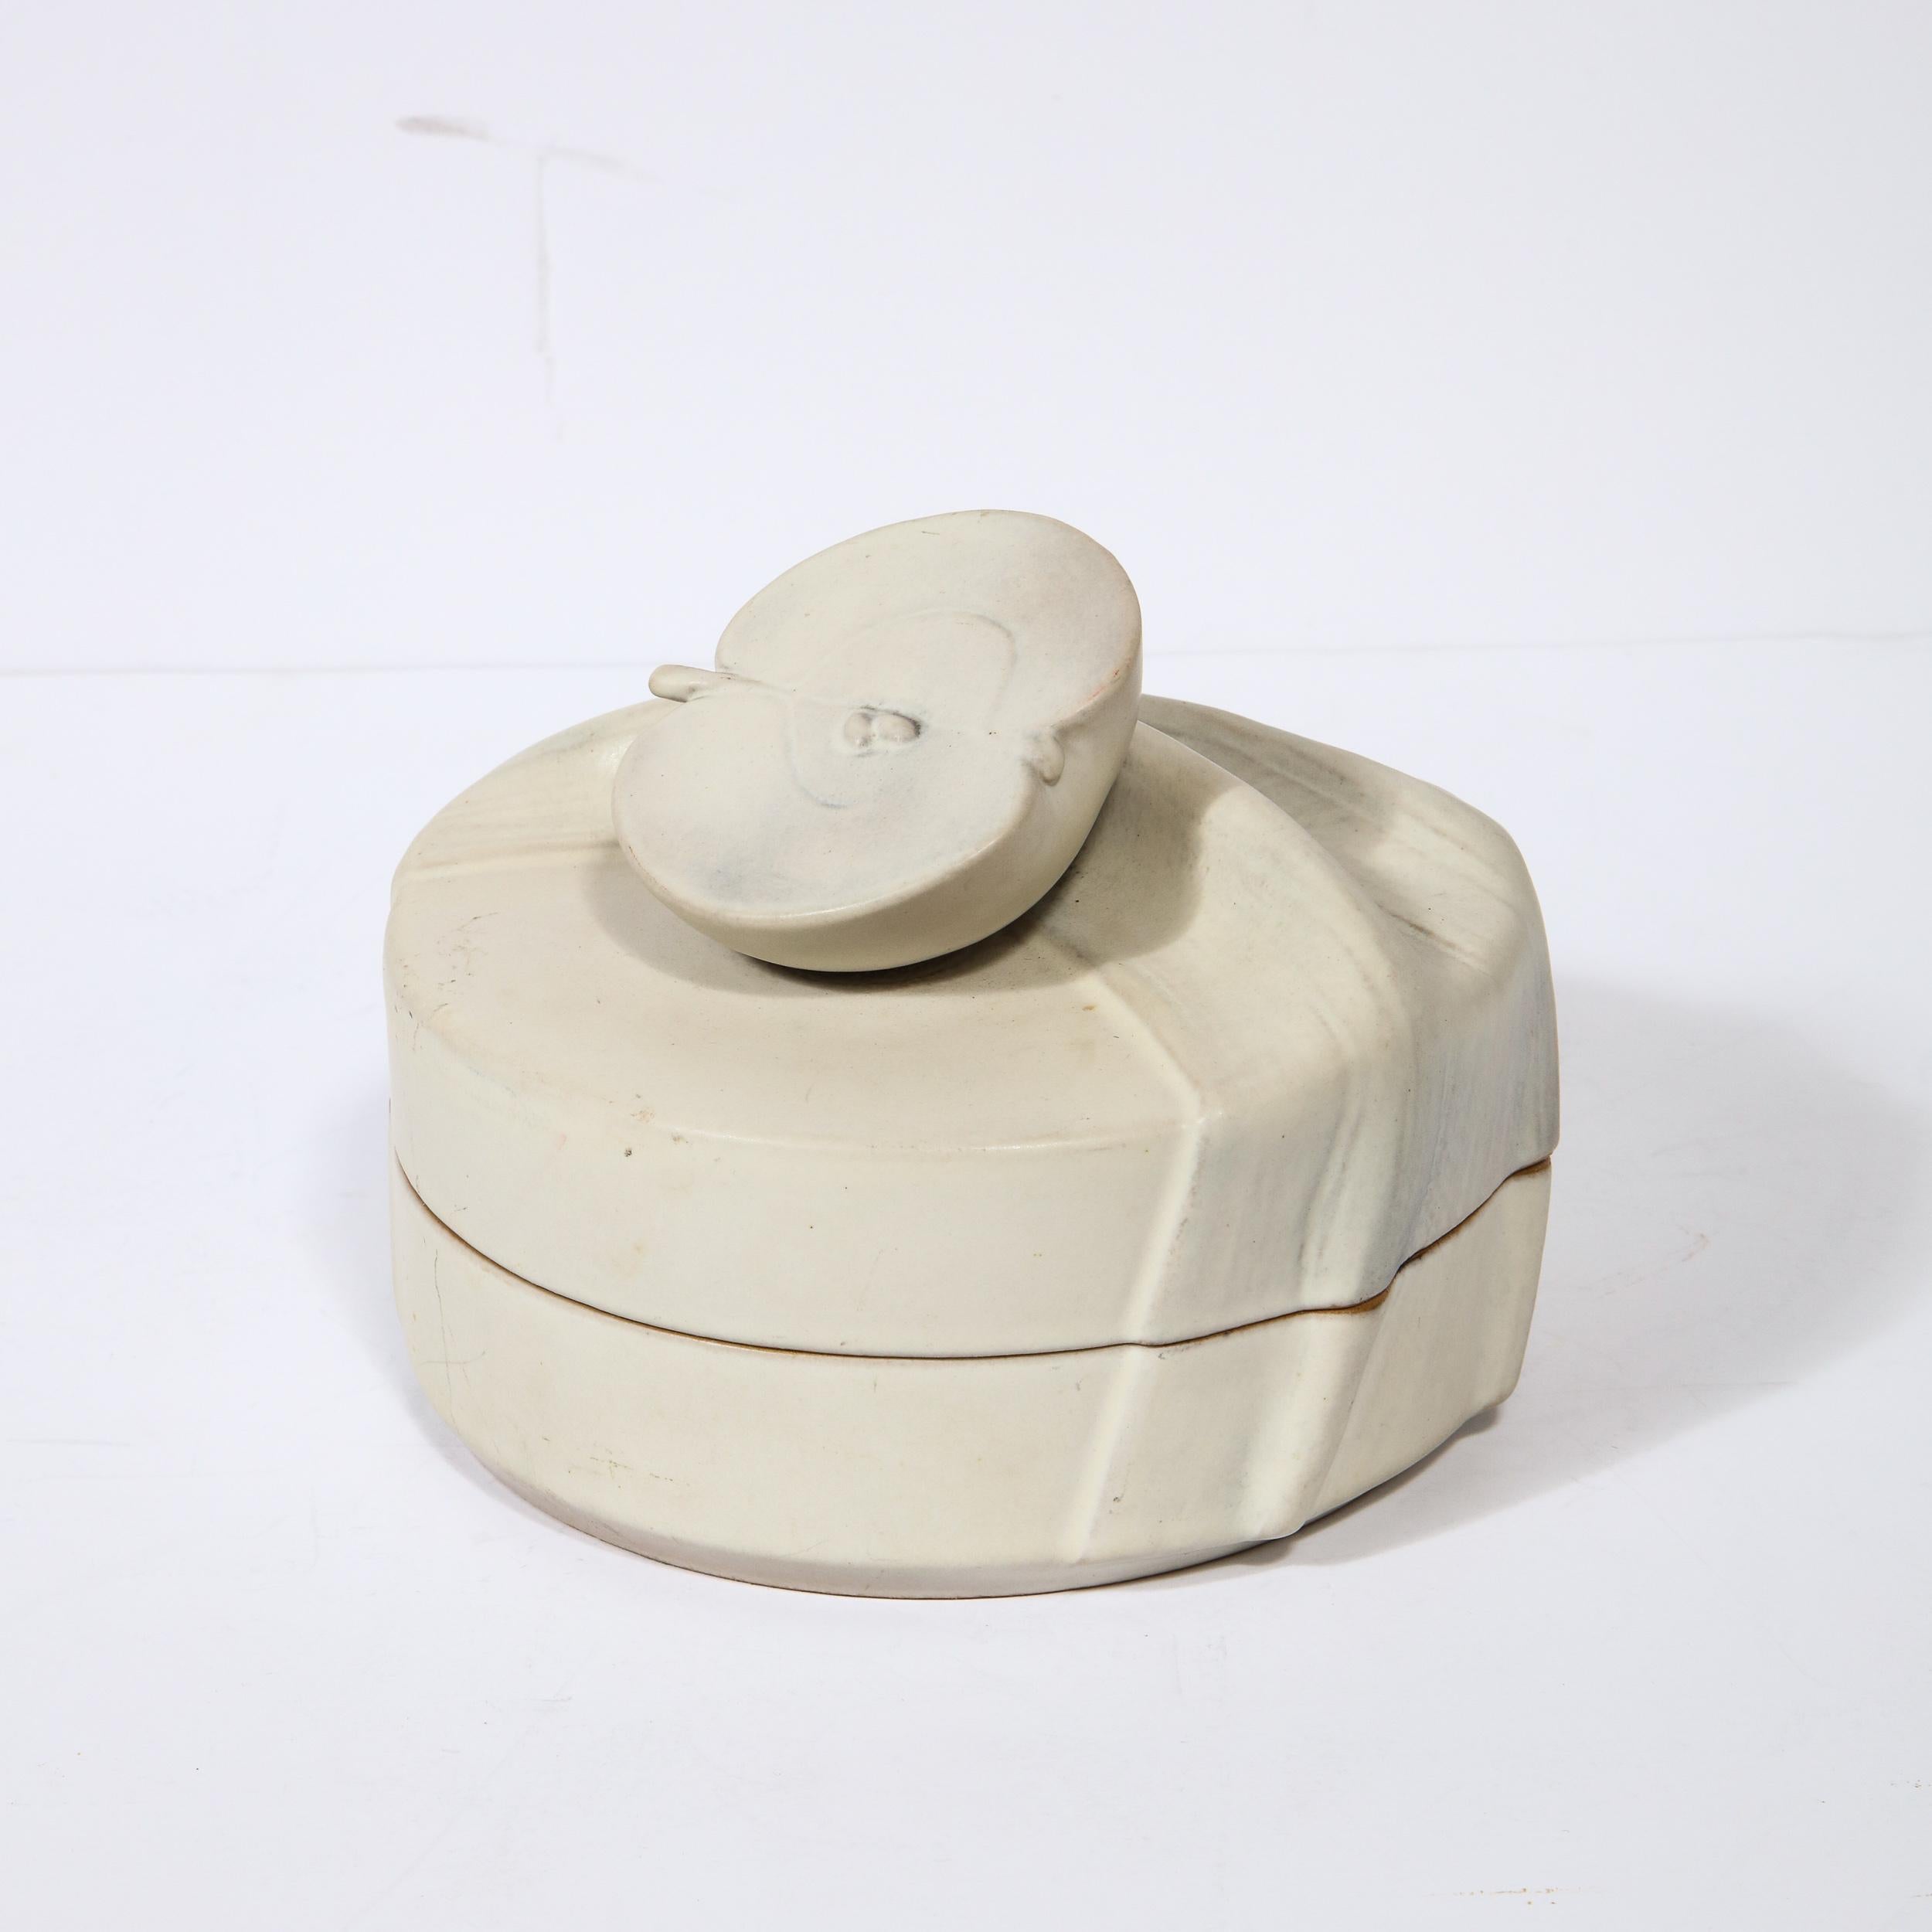 Diese raffinierte Keramik-Deckeldose wurde von dem geschätzten Hersteller Rosenthal realisiert. Er besteht aus einem runden Körper mit einem skulpturalen Zug in Form eines halbierten Apfels, der auf einer strukturierten Oberfläche sitzt, die wie ein